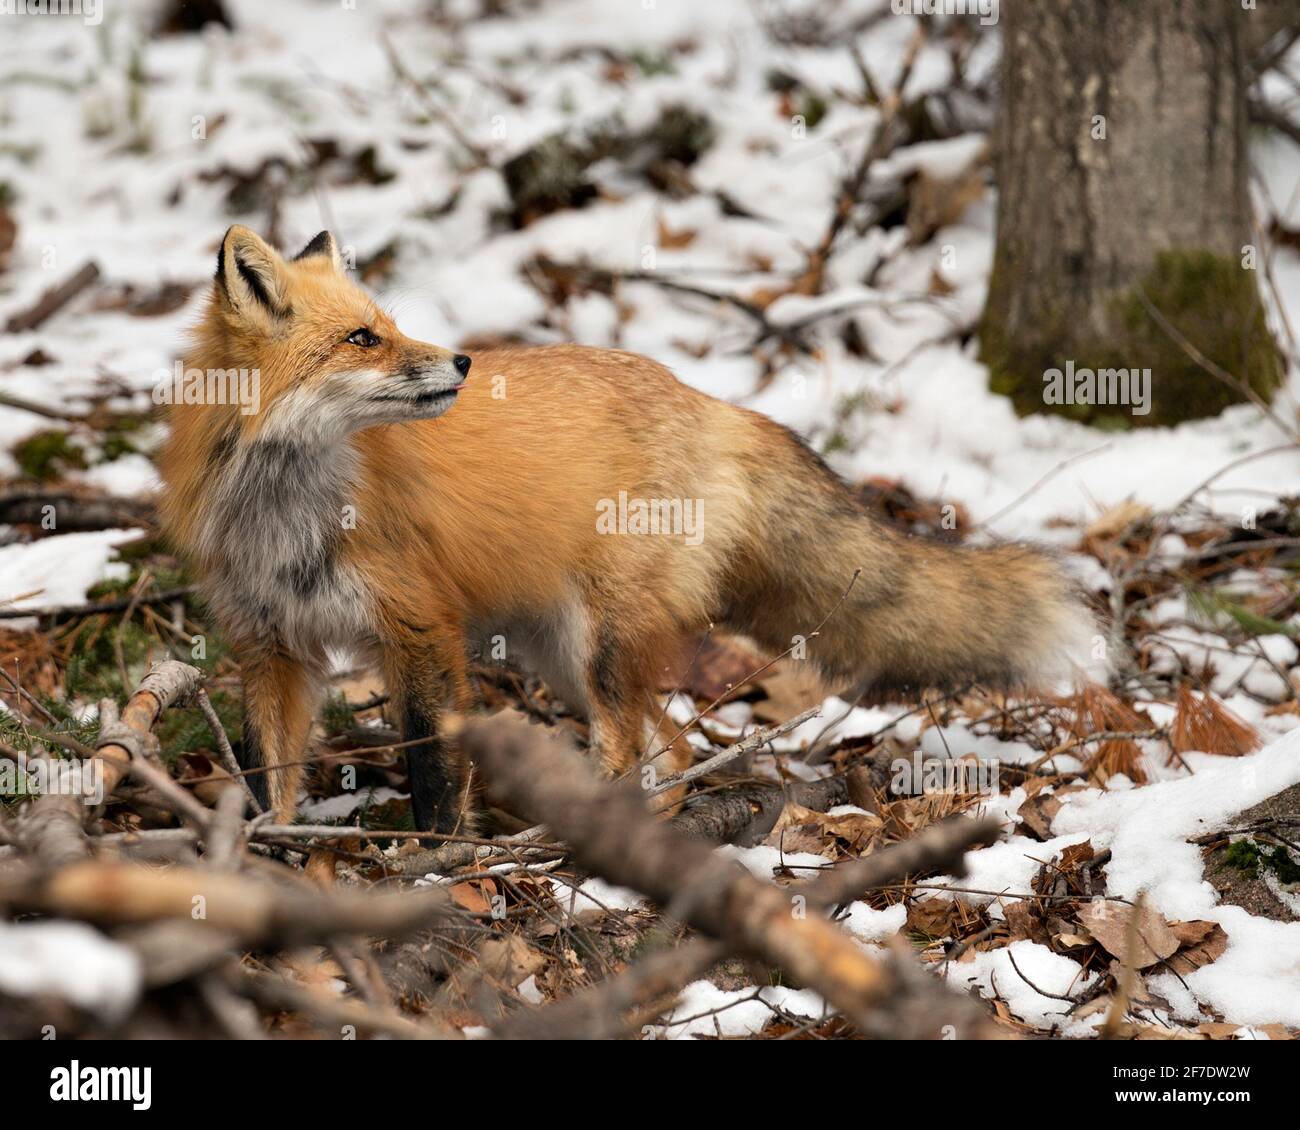 Vista del profilo di Red Fox in primo piano nella stagione invernale con sfondo di neve sfocata e godendo il suo ambiente e habitat. Immagine FOX. Immagine. Verticale. Foto Stock